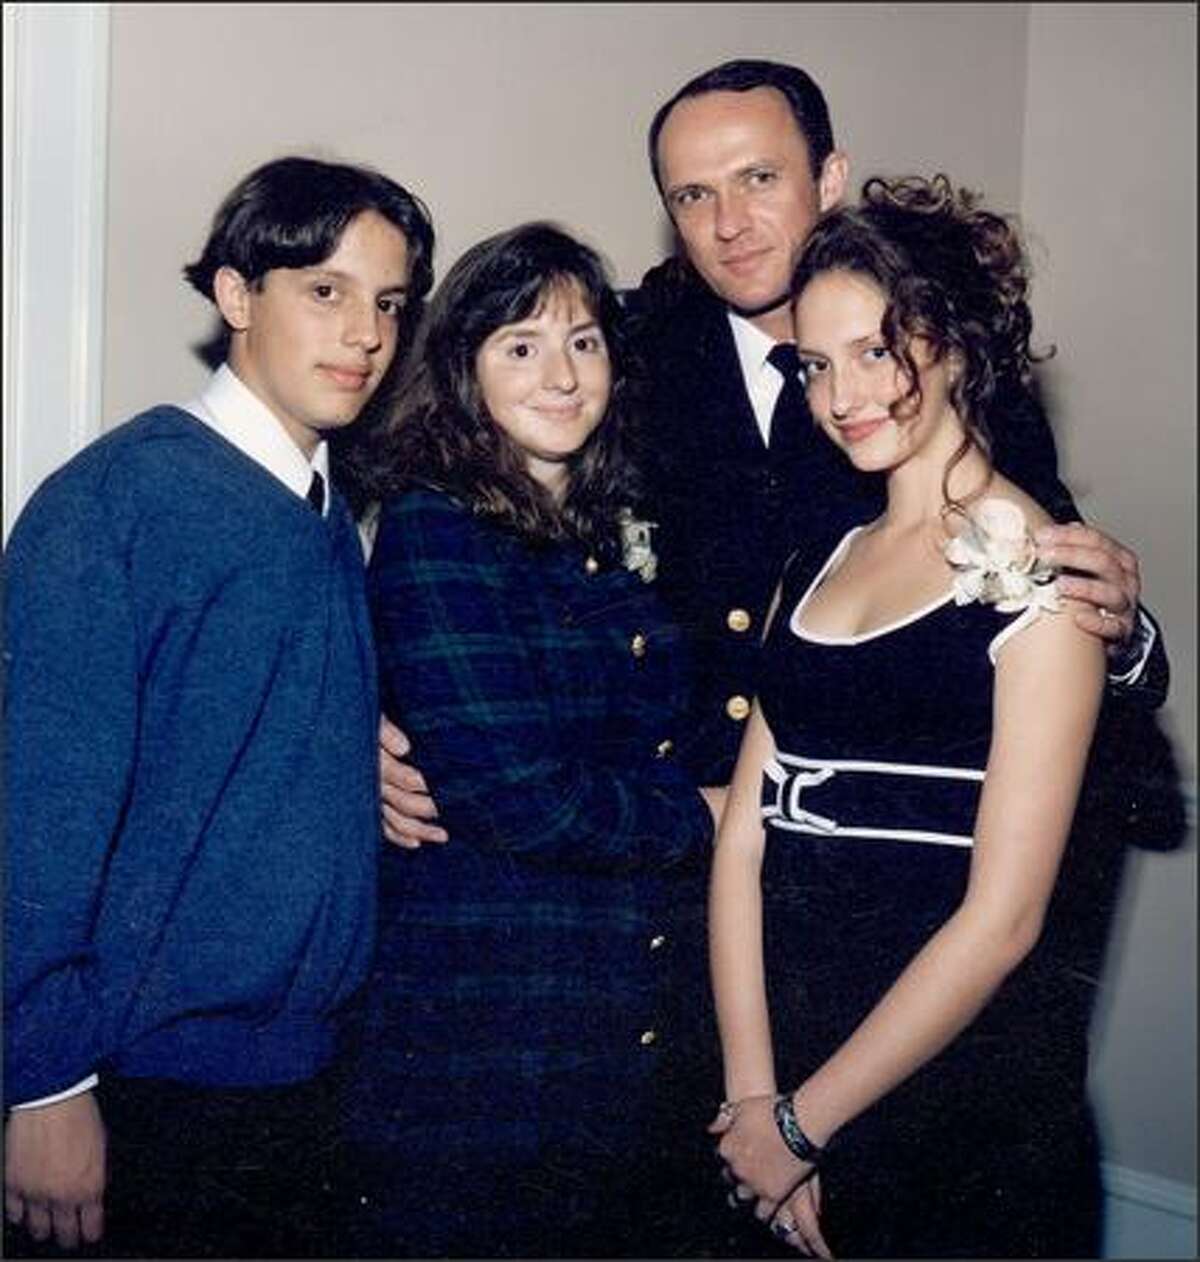 The Hunter family, from left, son Michael, Francine, Derek and daughter Nadine.